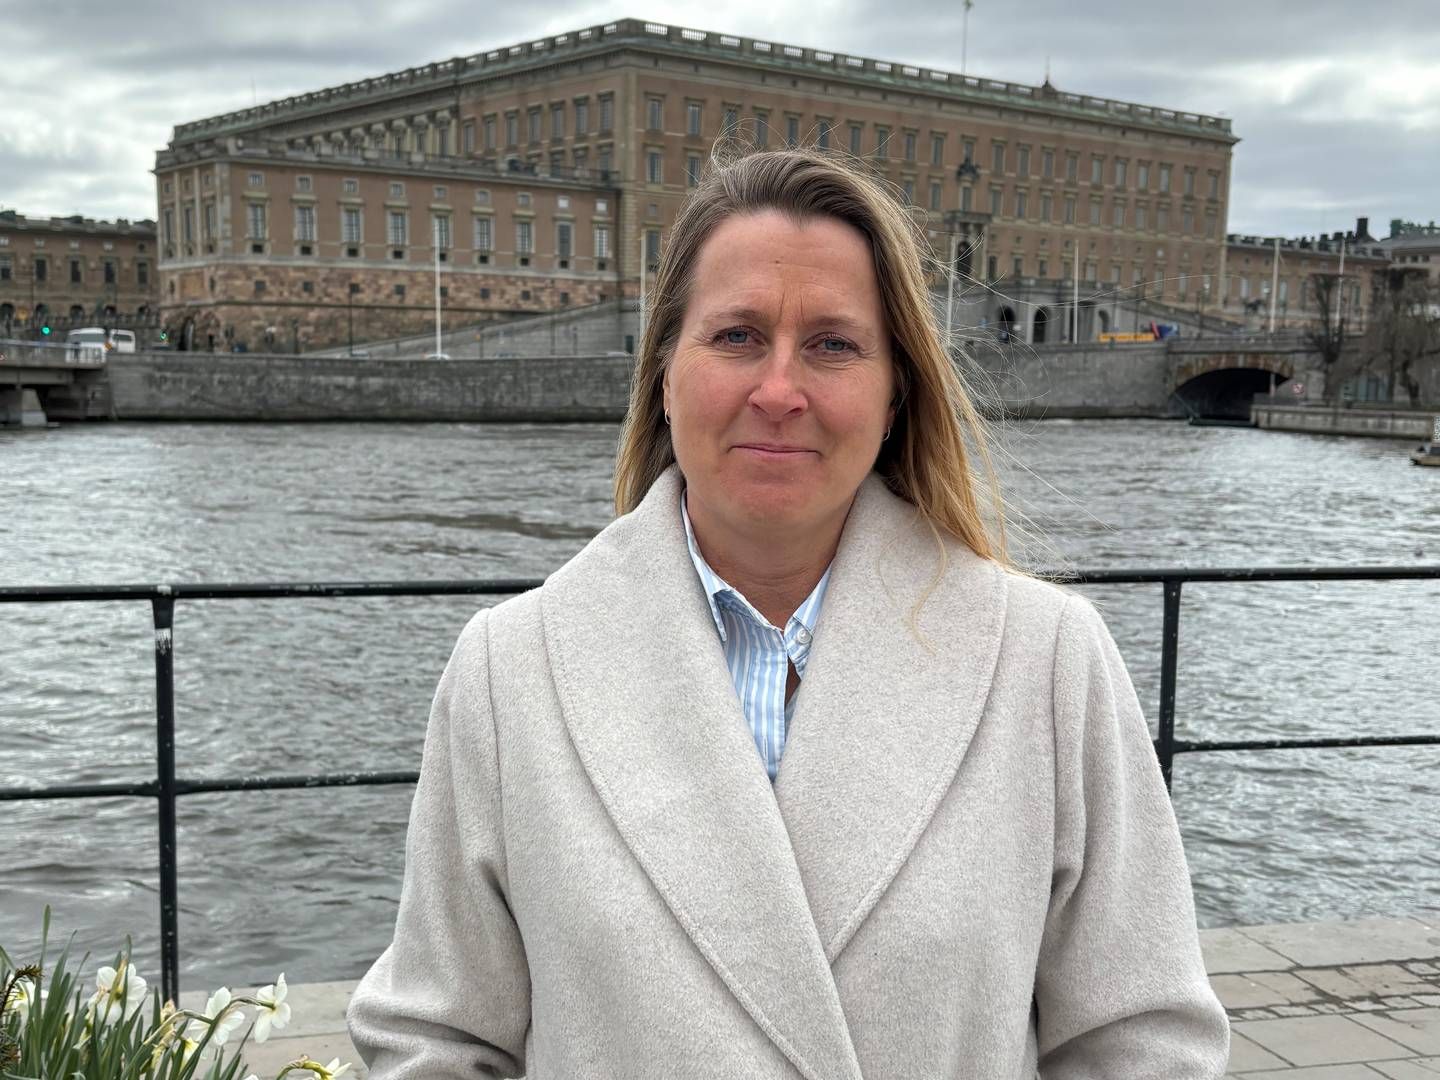 Magdalena Wahlqvist Alveskog has been CEO of Handelsbanken Fonder since 2019. | Photo: Handelsbanken / PR